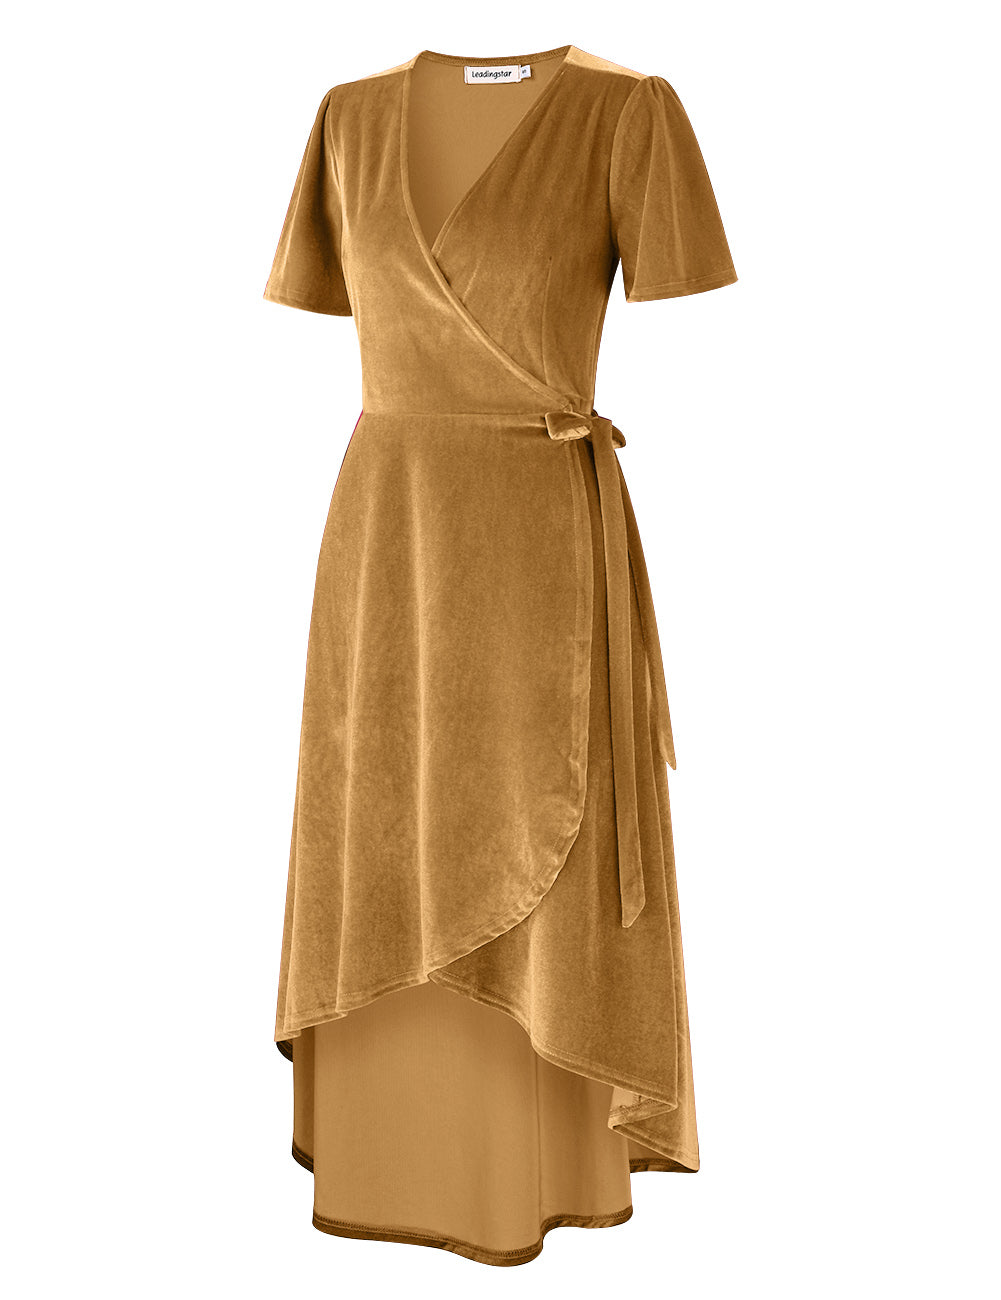 YESFASHION Women Velvet V-Neck Short Sleeve Empire Party Midi Dress Gold